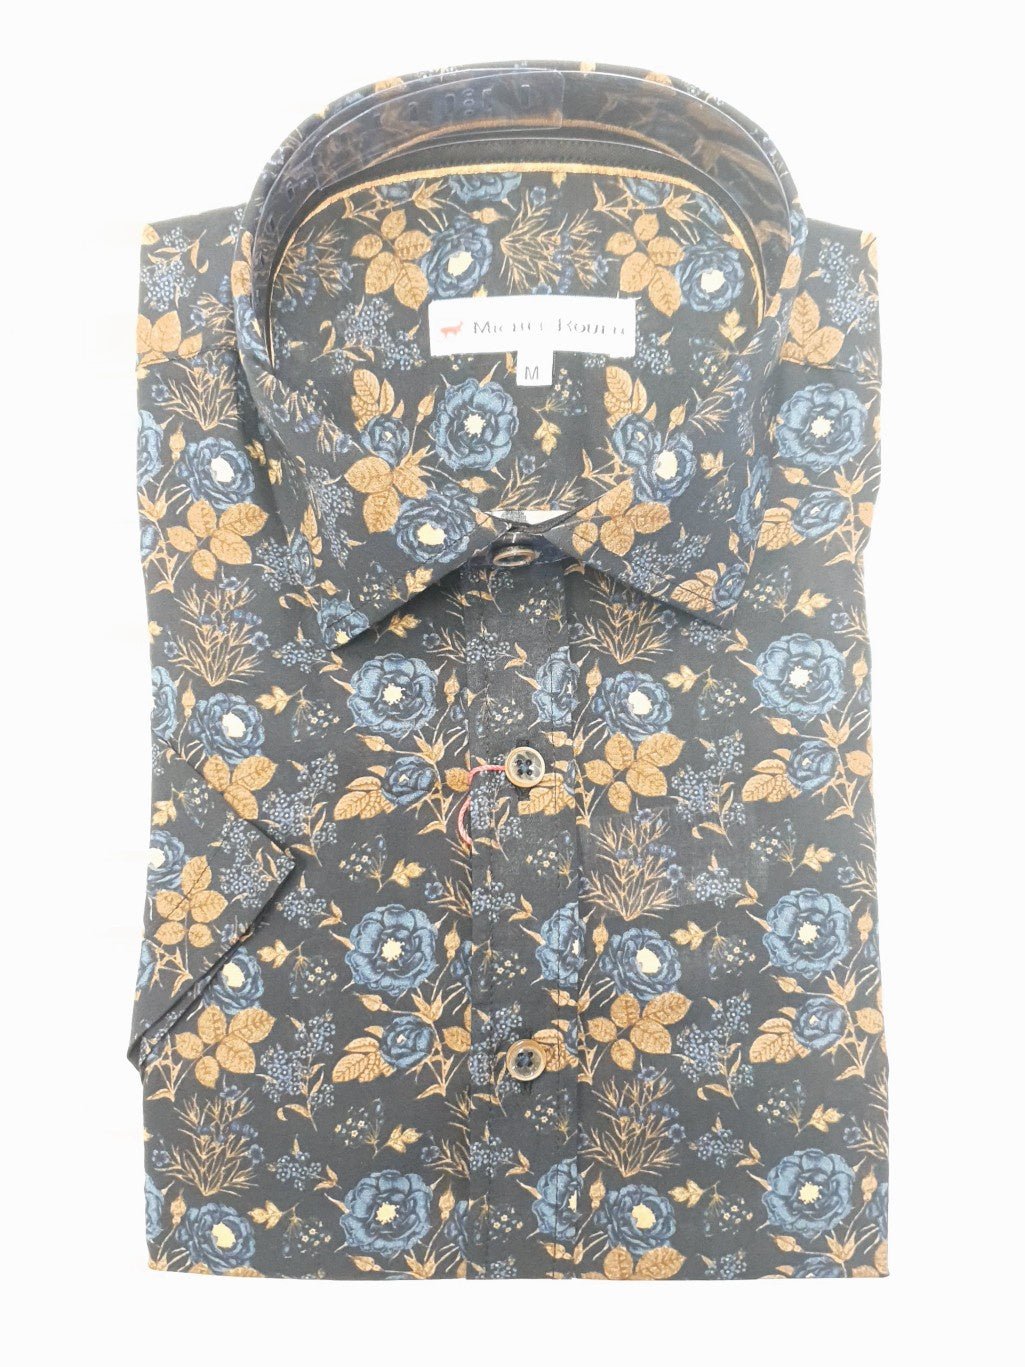 Michel Rouen S22 001 Shirt - Thomson's Suits Ltd - Multi - M - 64236